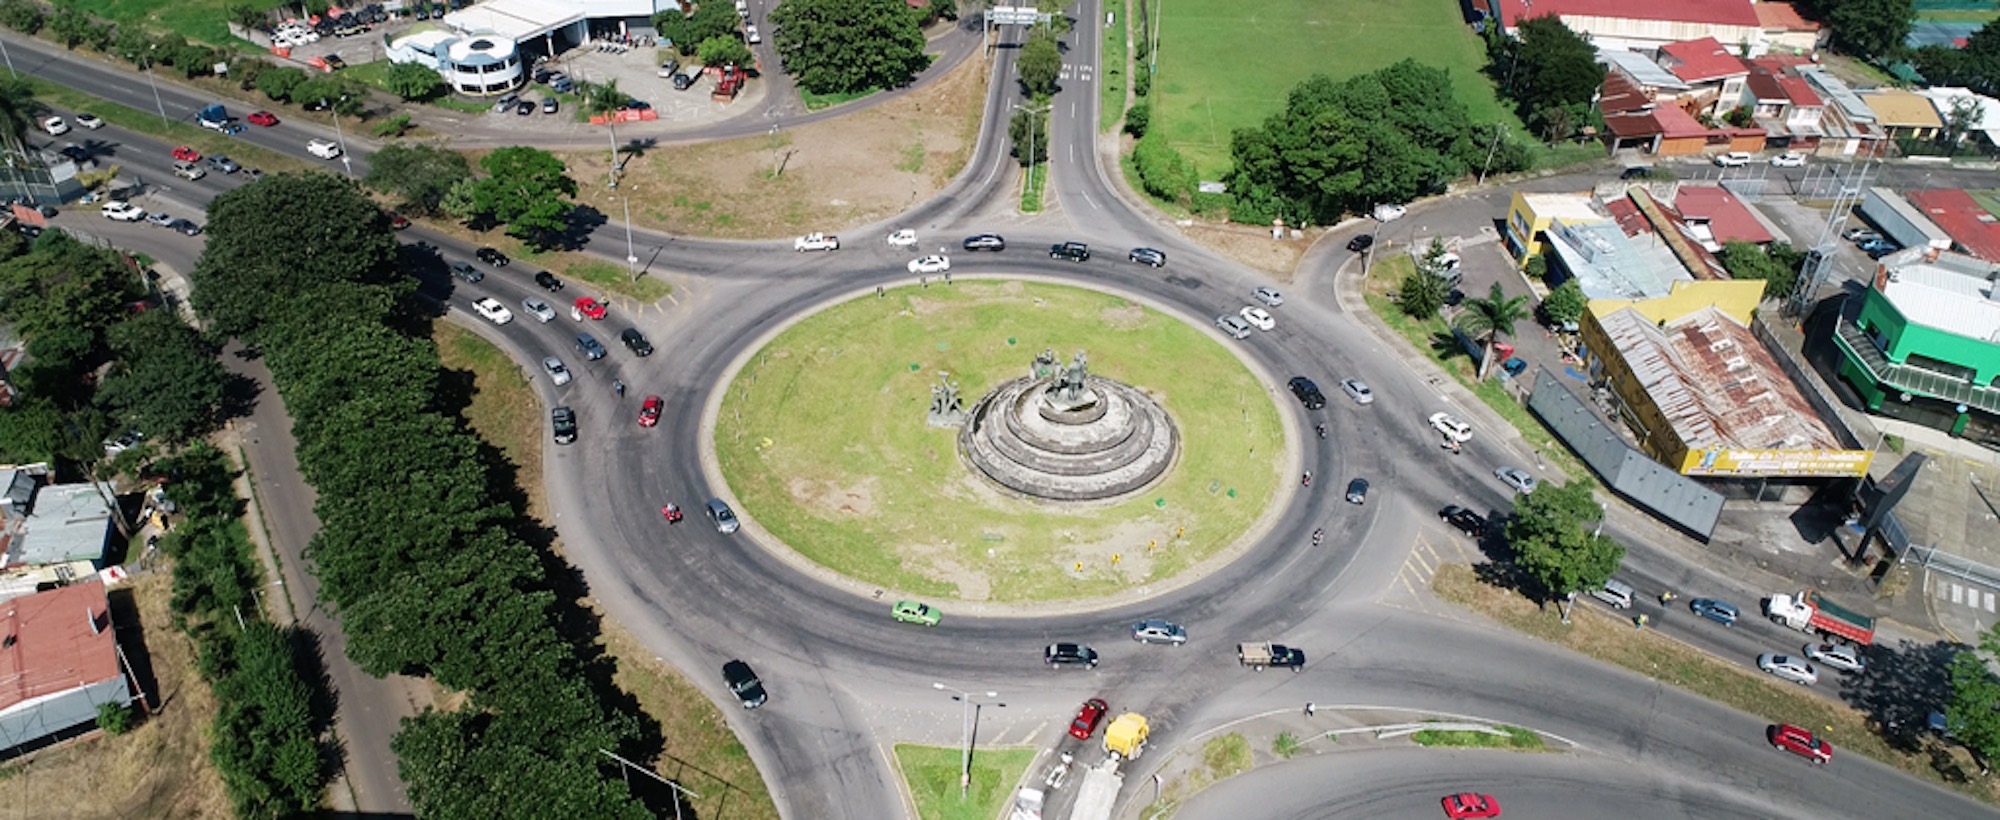 ¿Qué impide a Costa Rica avanzar en desarrollo de infraestructura?